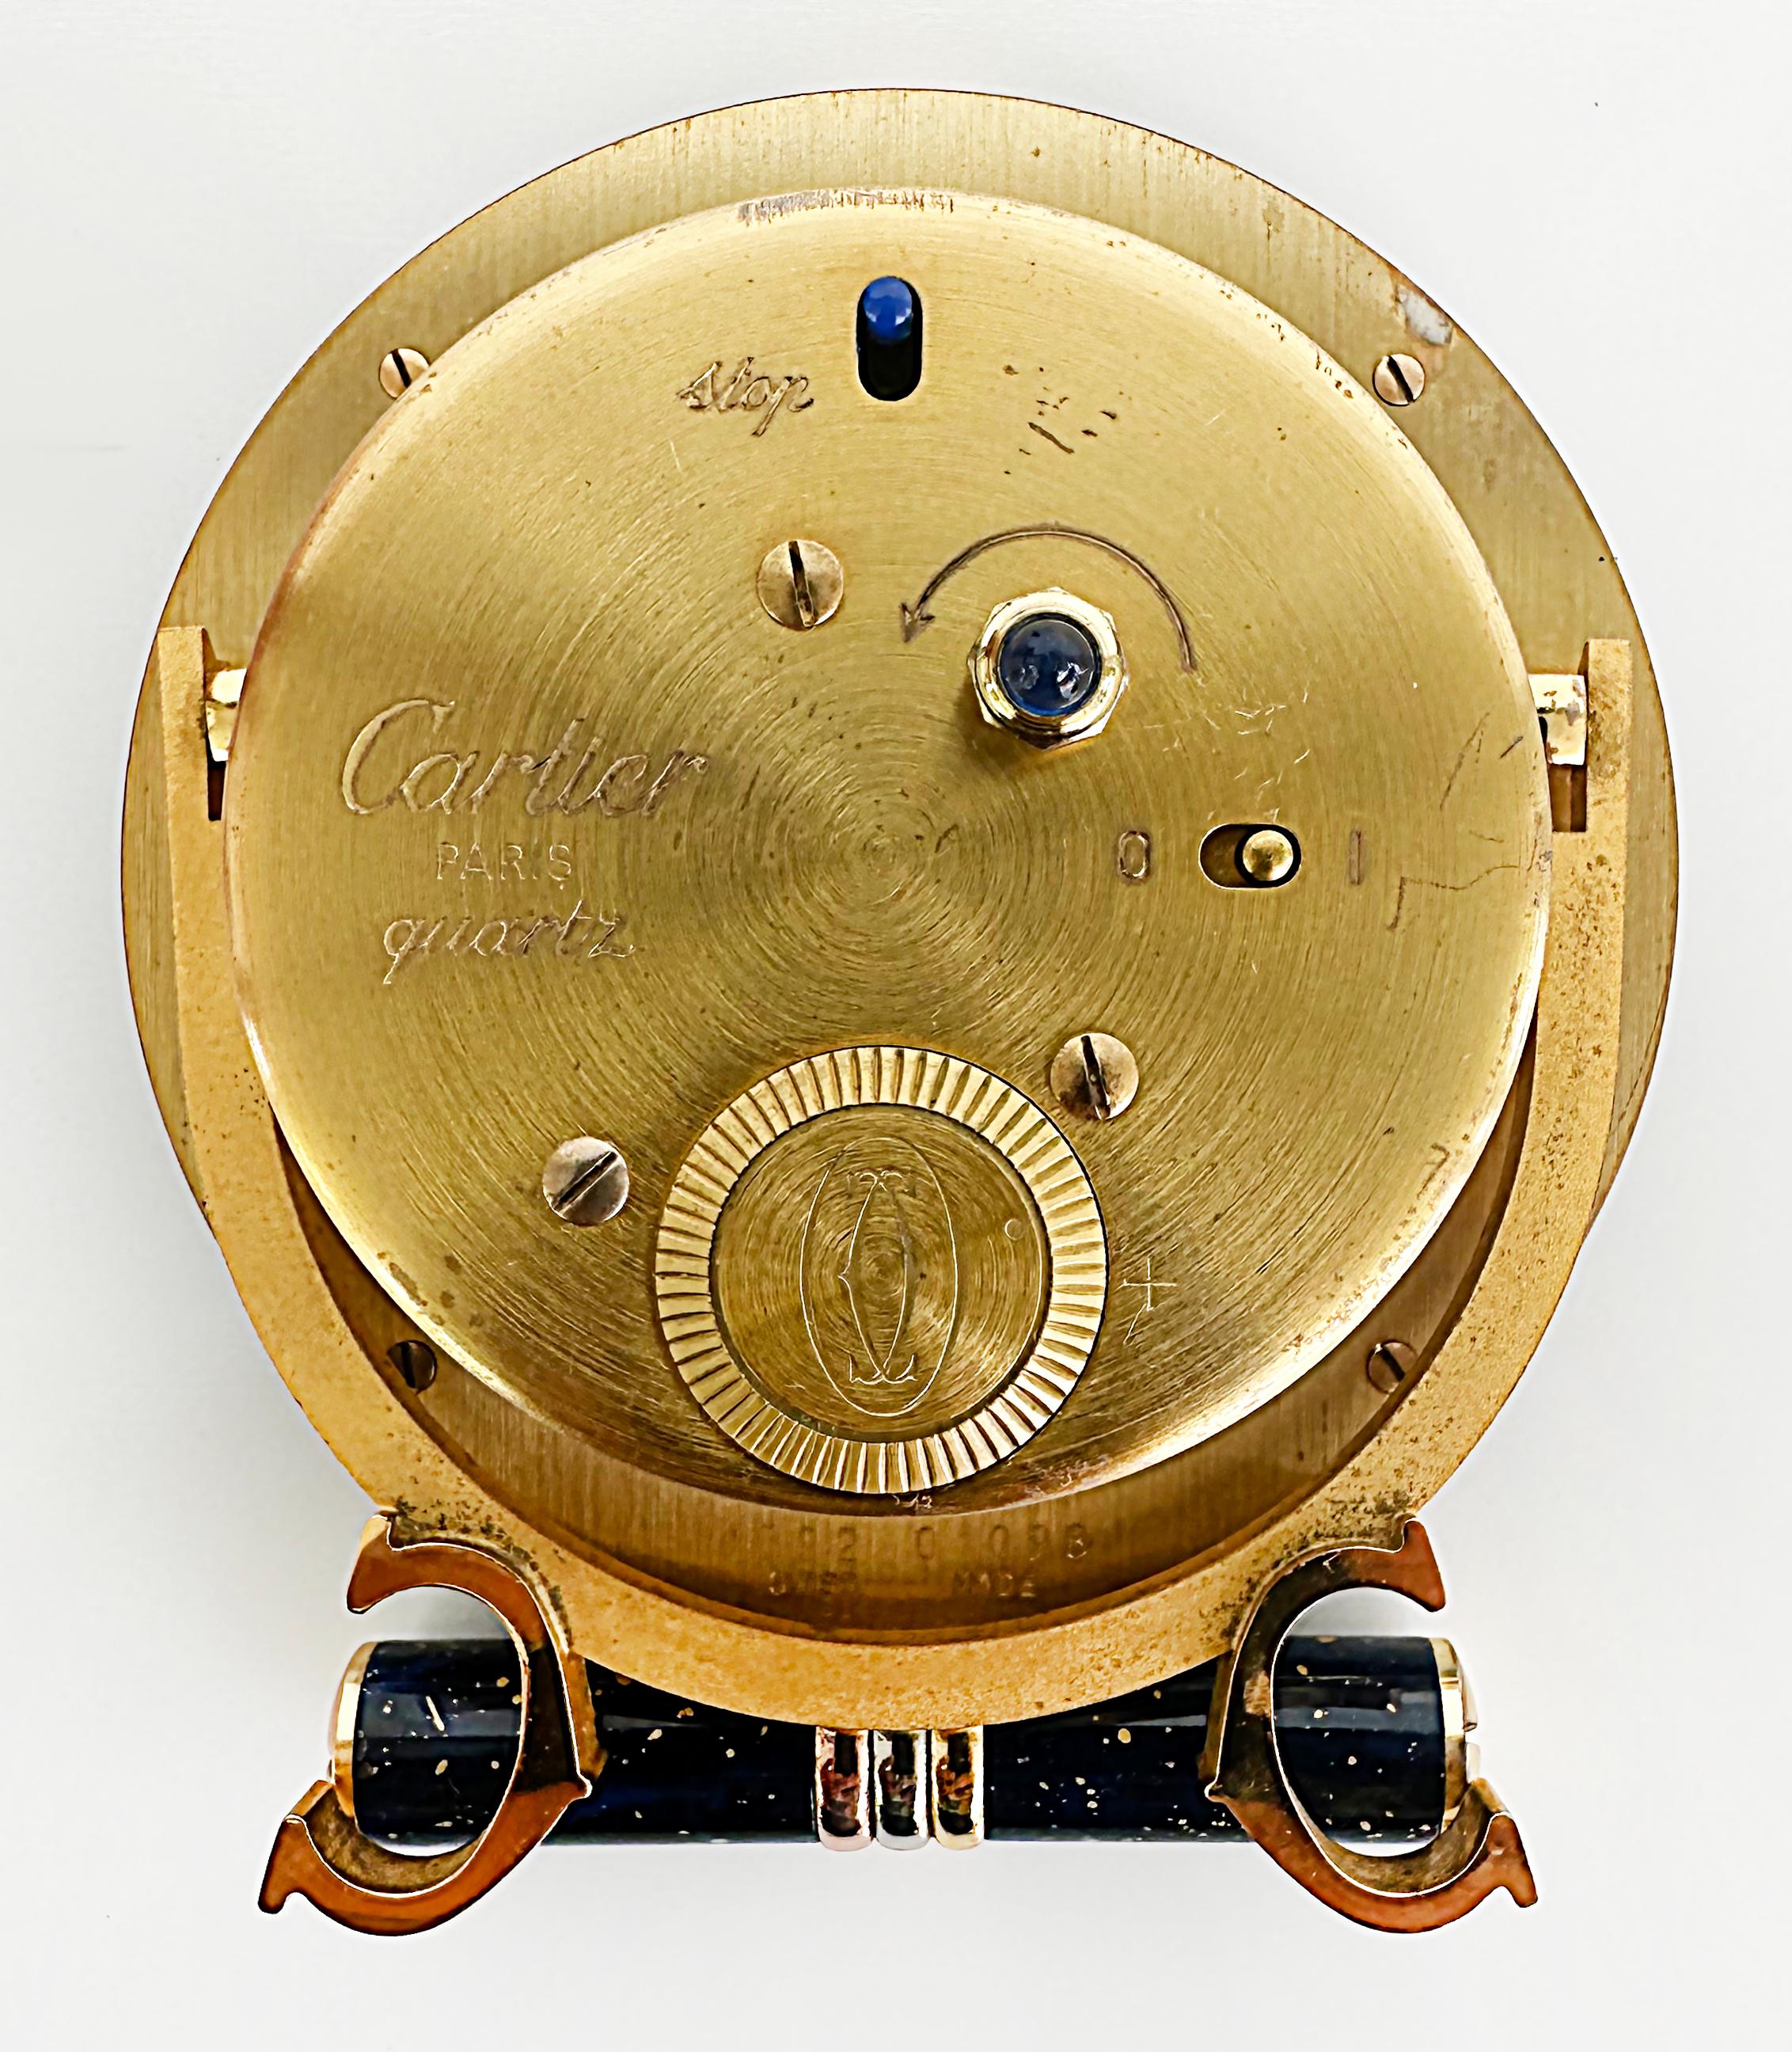 Les Must de Cartier Paris Enamel Gold Plated Travel Clock with Original Case 7